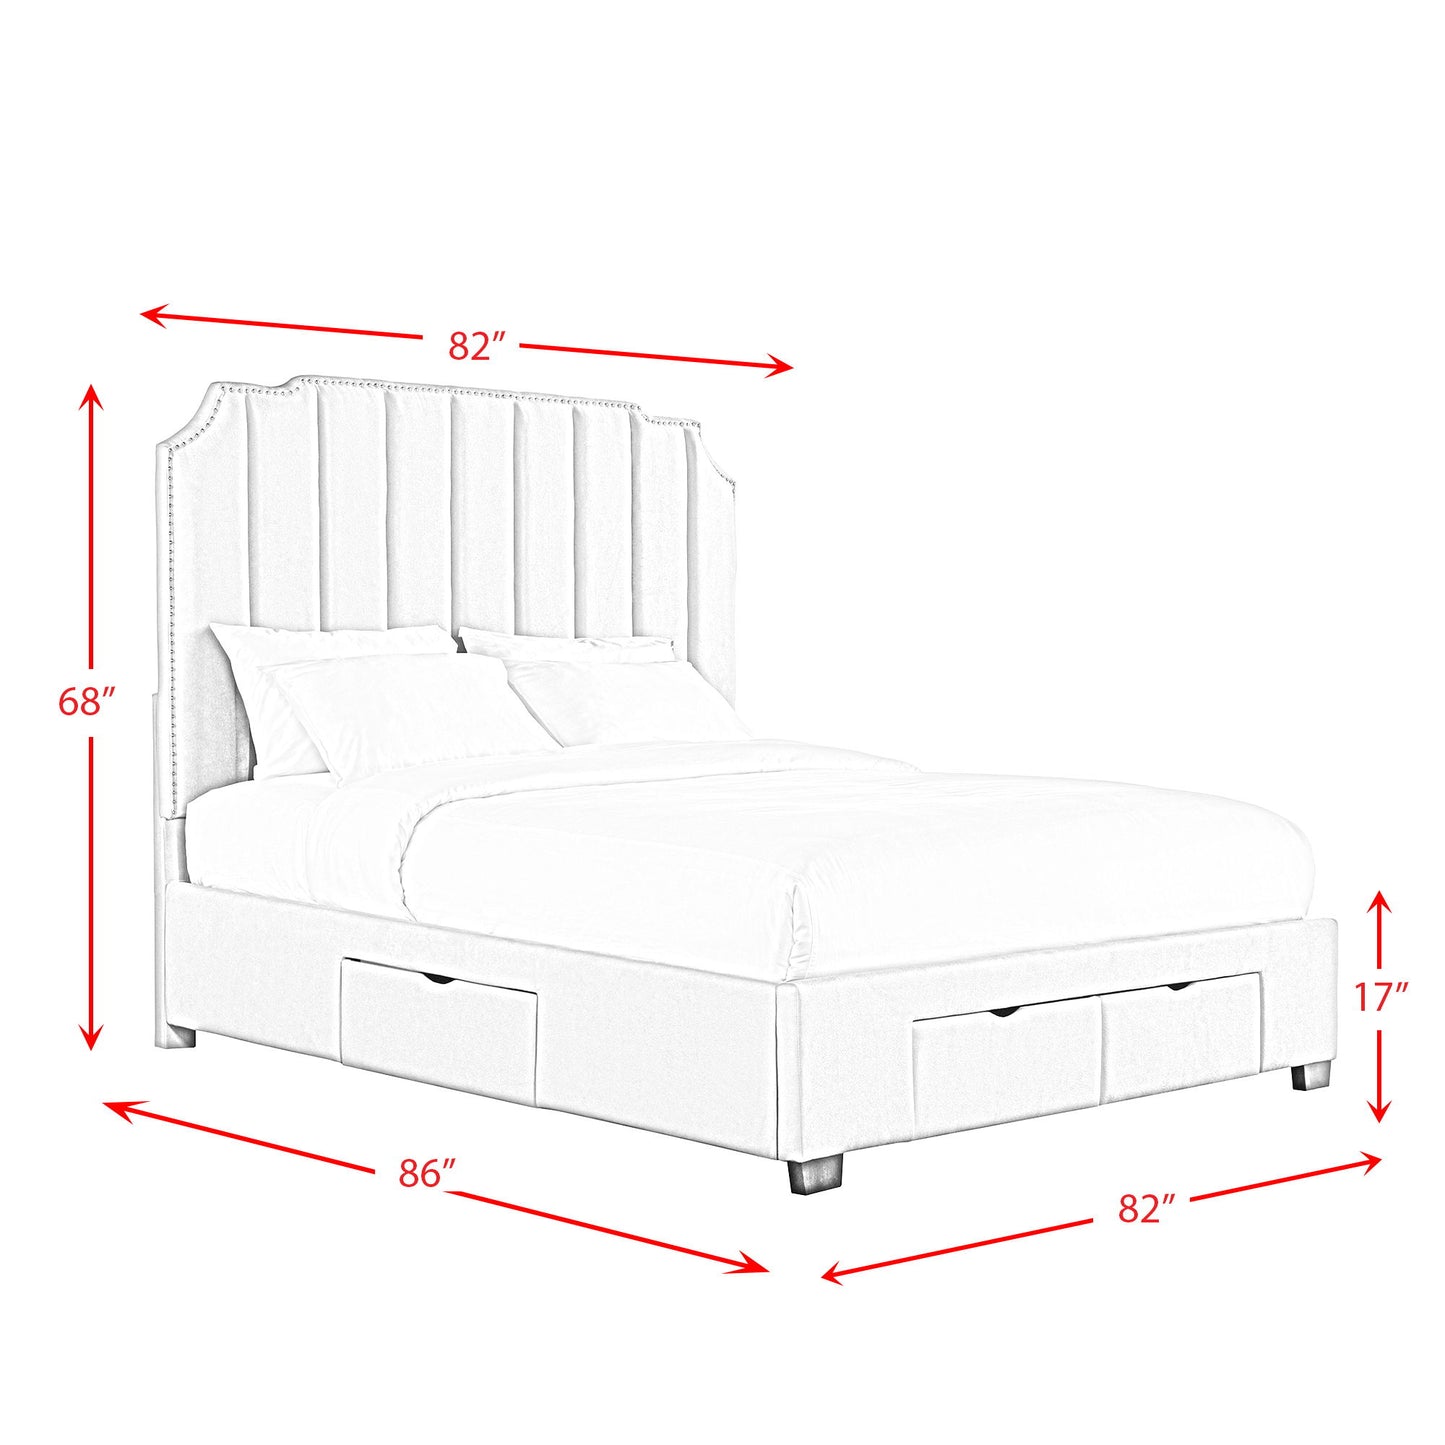 Harper - Upholstered Storage Bed